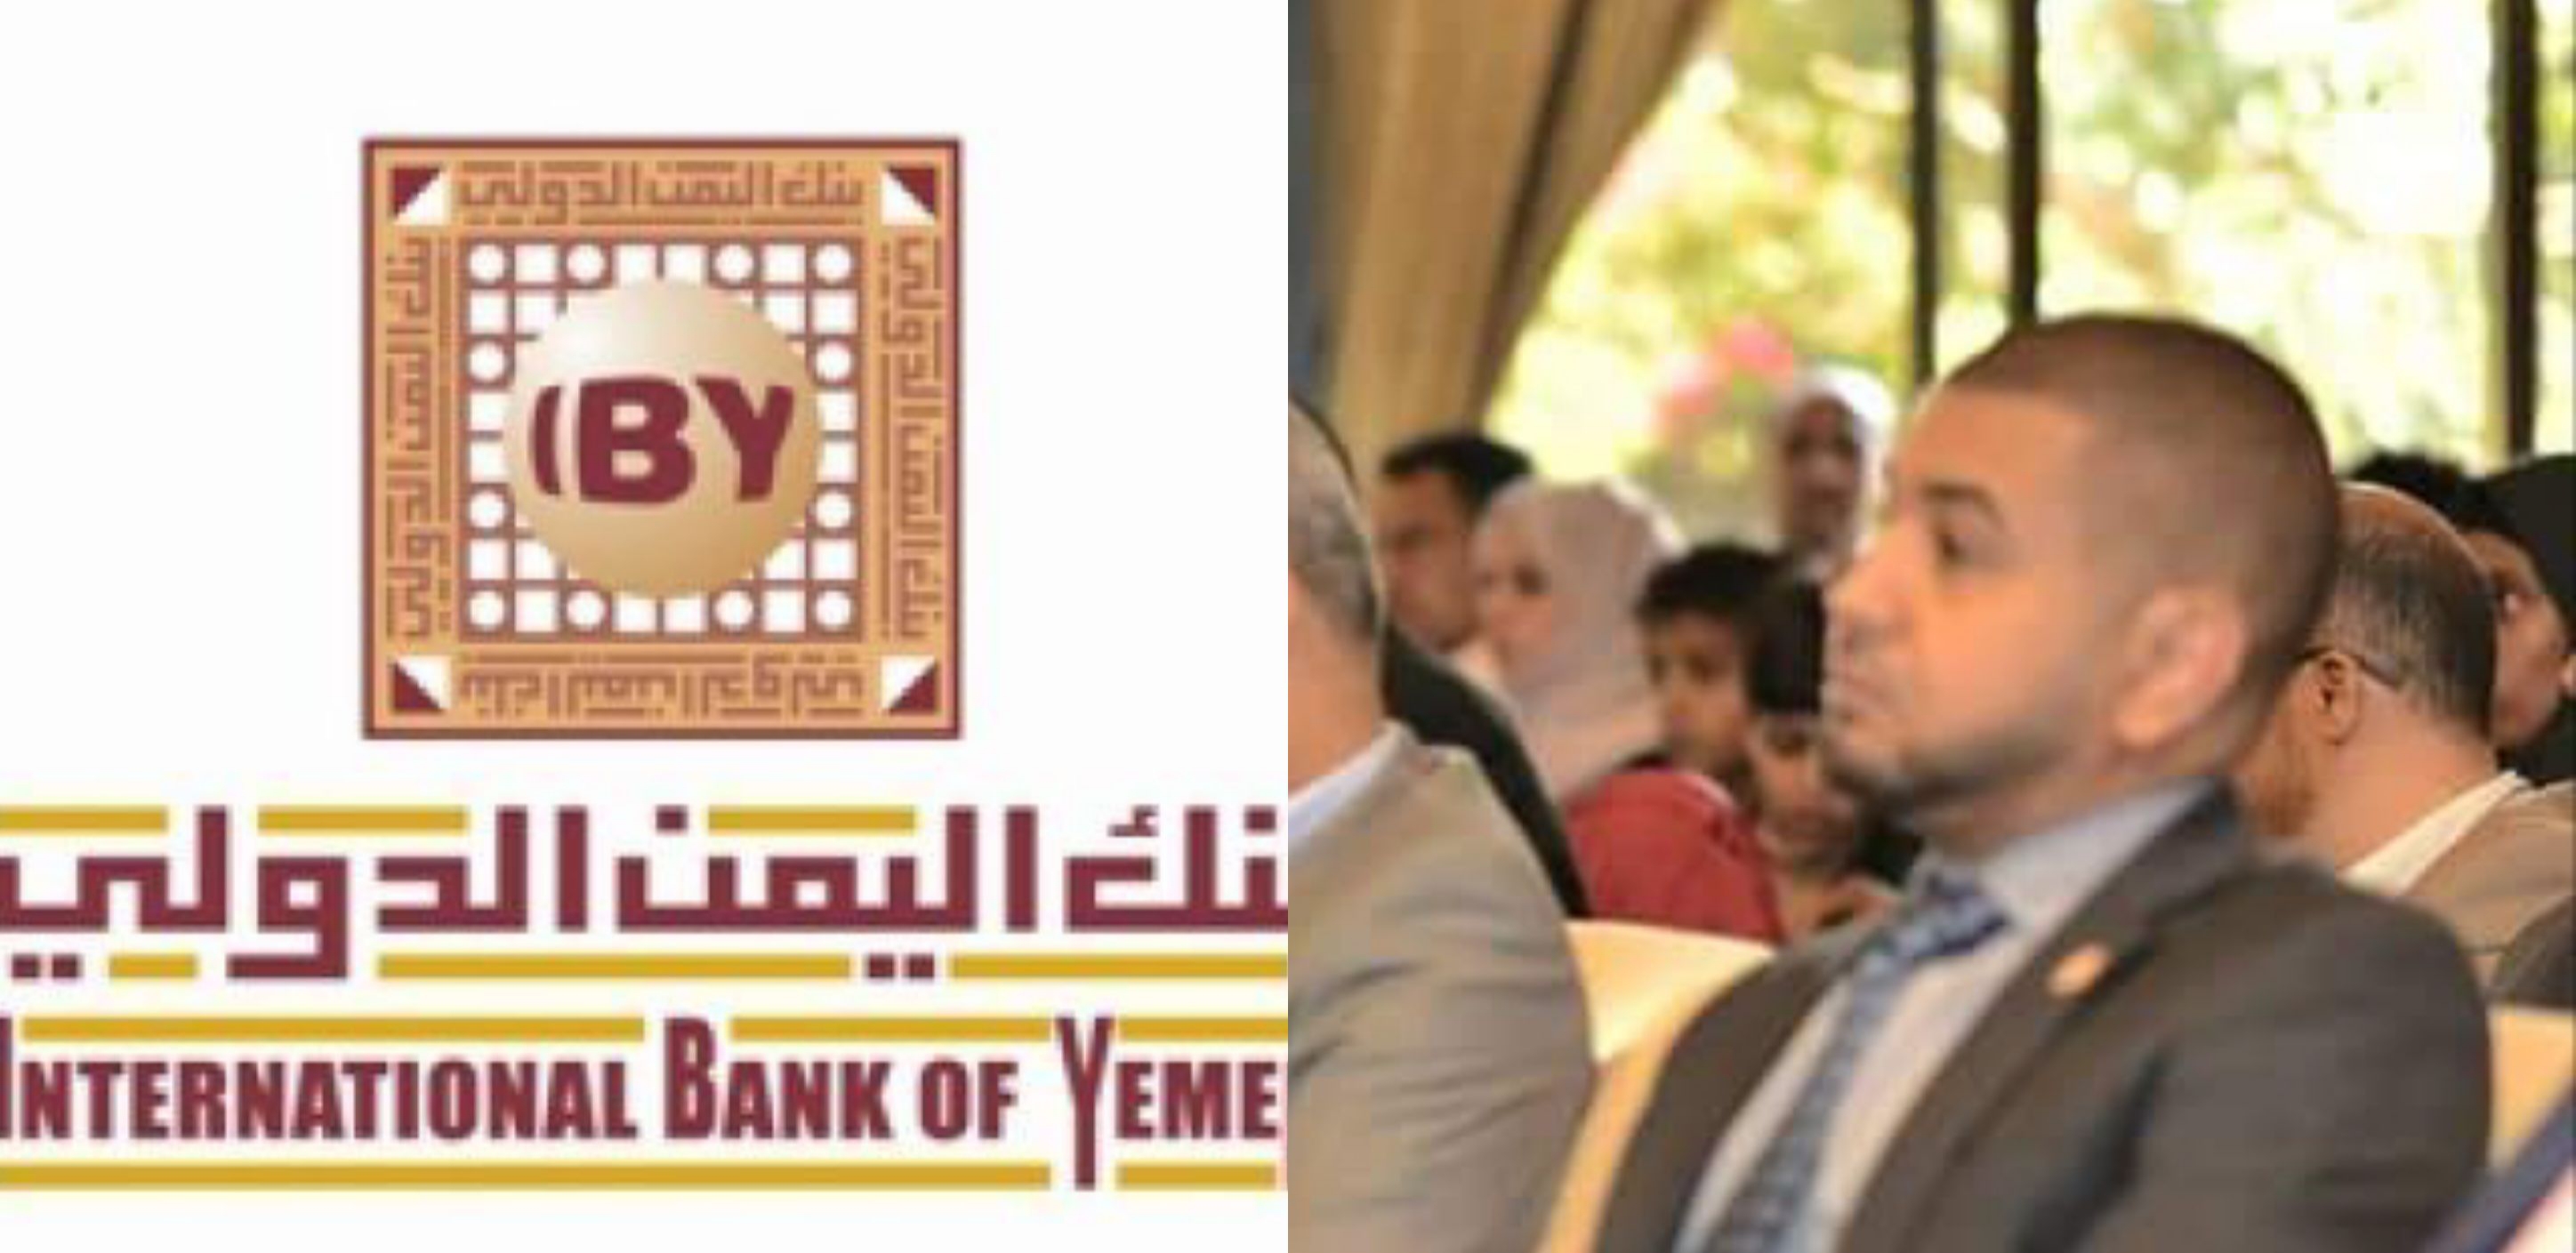 خبراء اقتصاد يحذرون بنك اليمن الدولي بصنعاءعلى وشك الانهيار والافلاس بعد تورطة مدير البنك بقضايا فساد ونصب وتلاعب بأرصدة العملاء والعملة